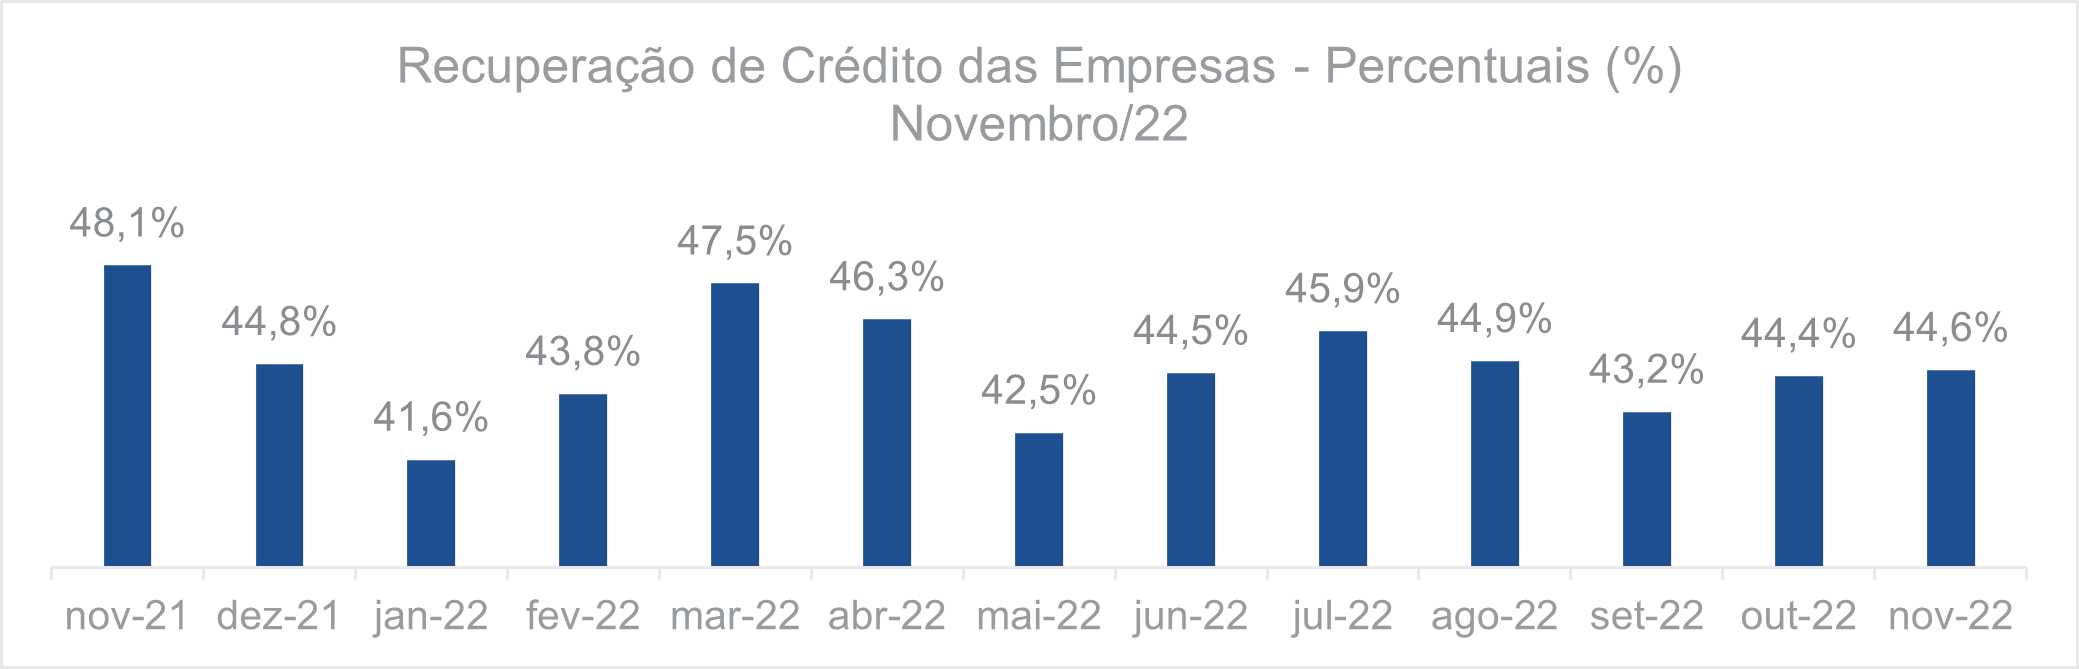 Recuperação de crédito das empresas Percentuais Novembro 2022